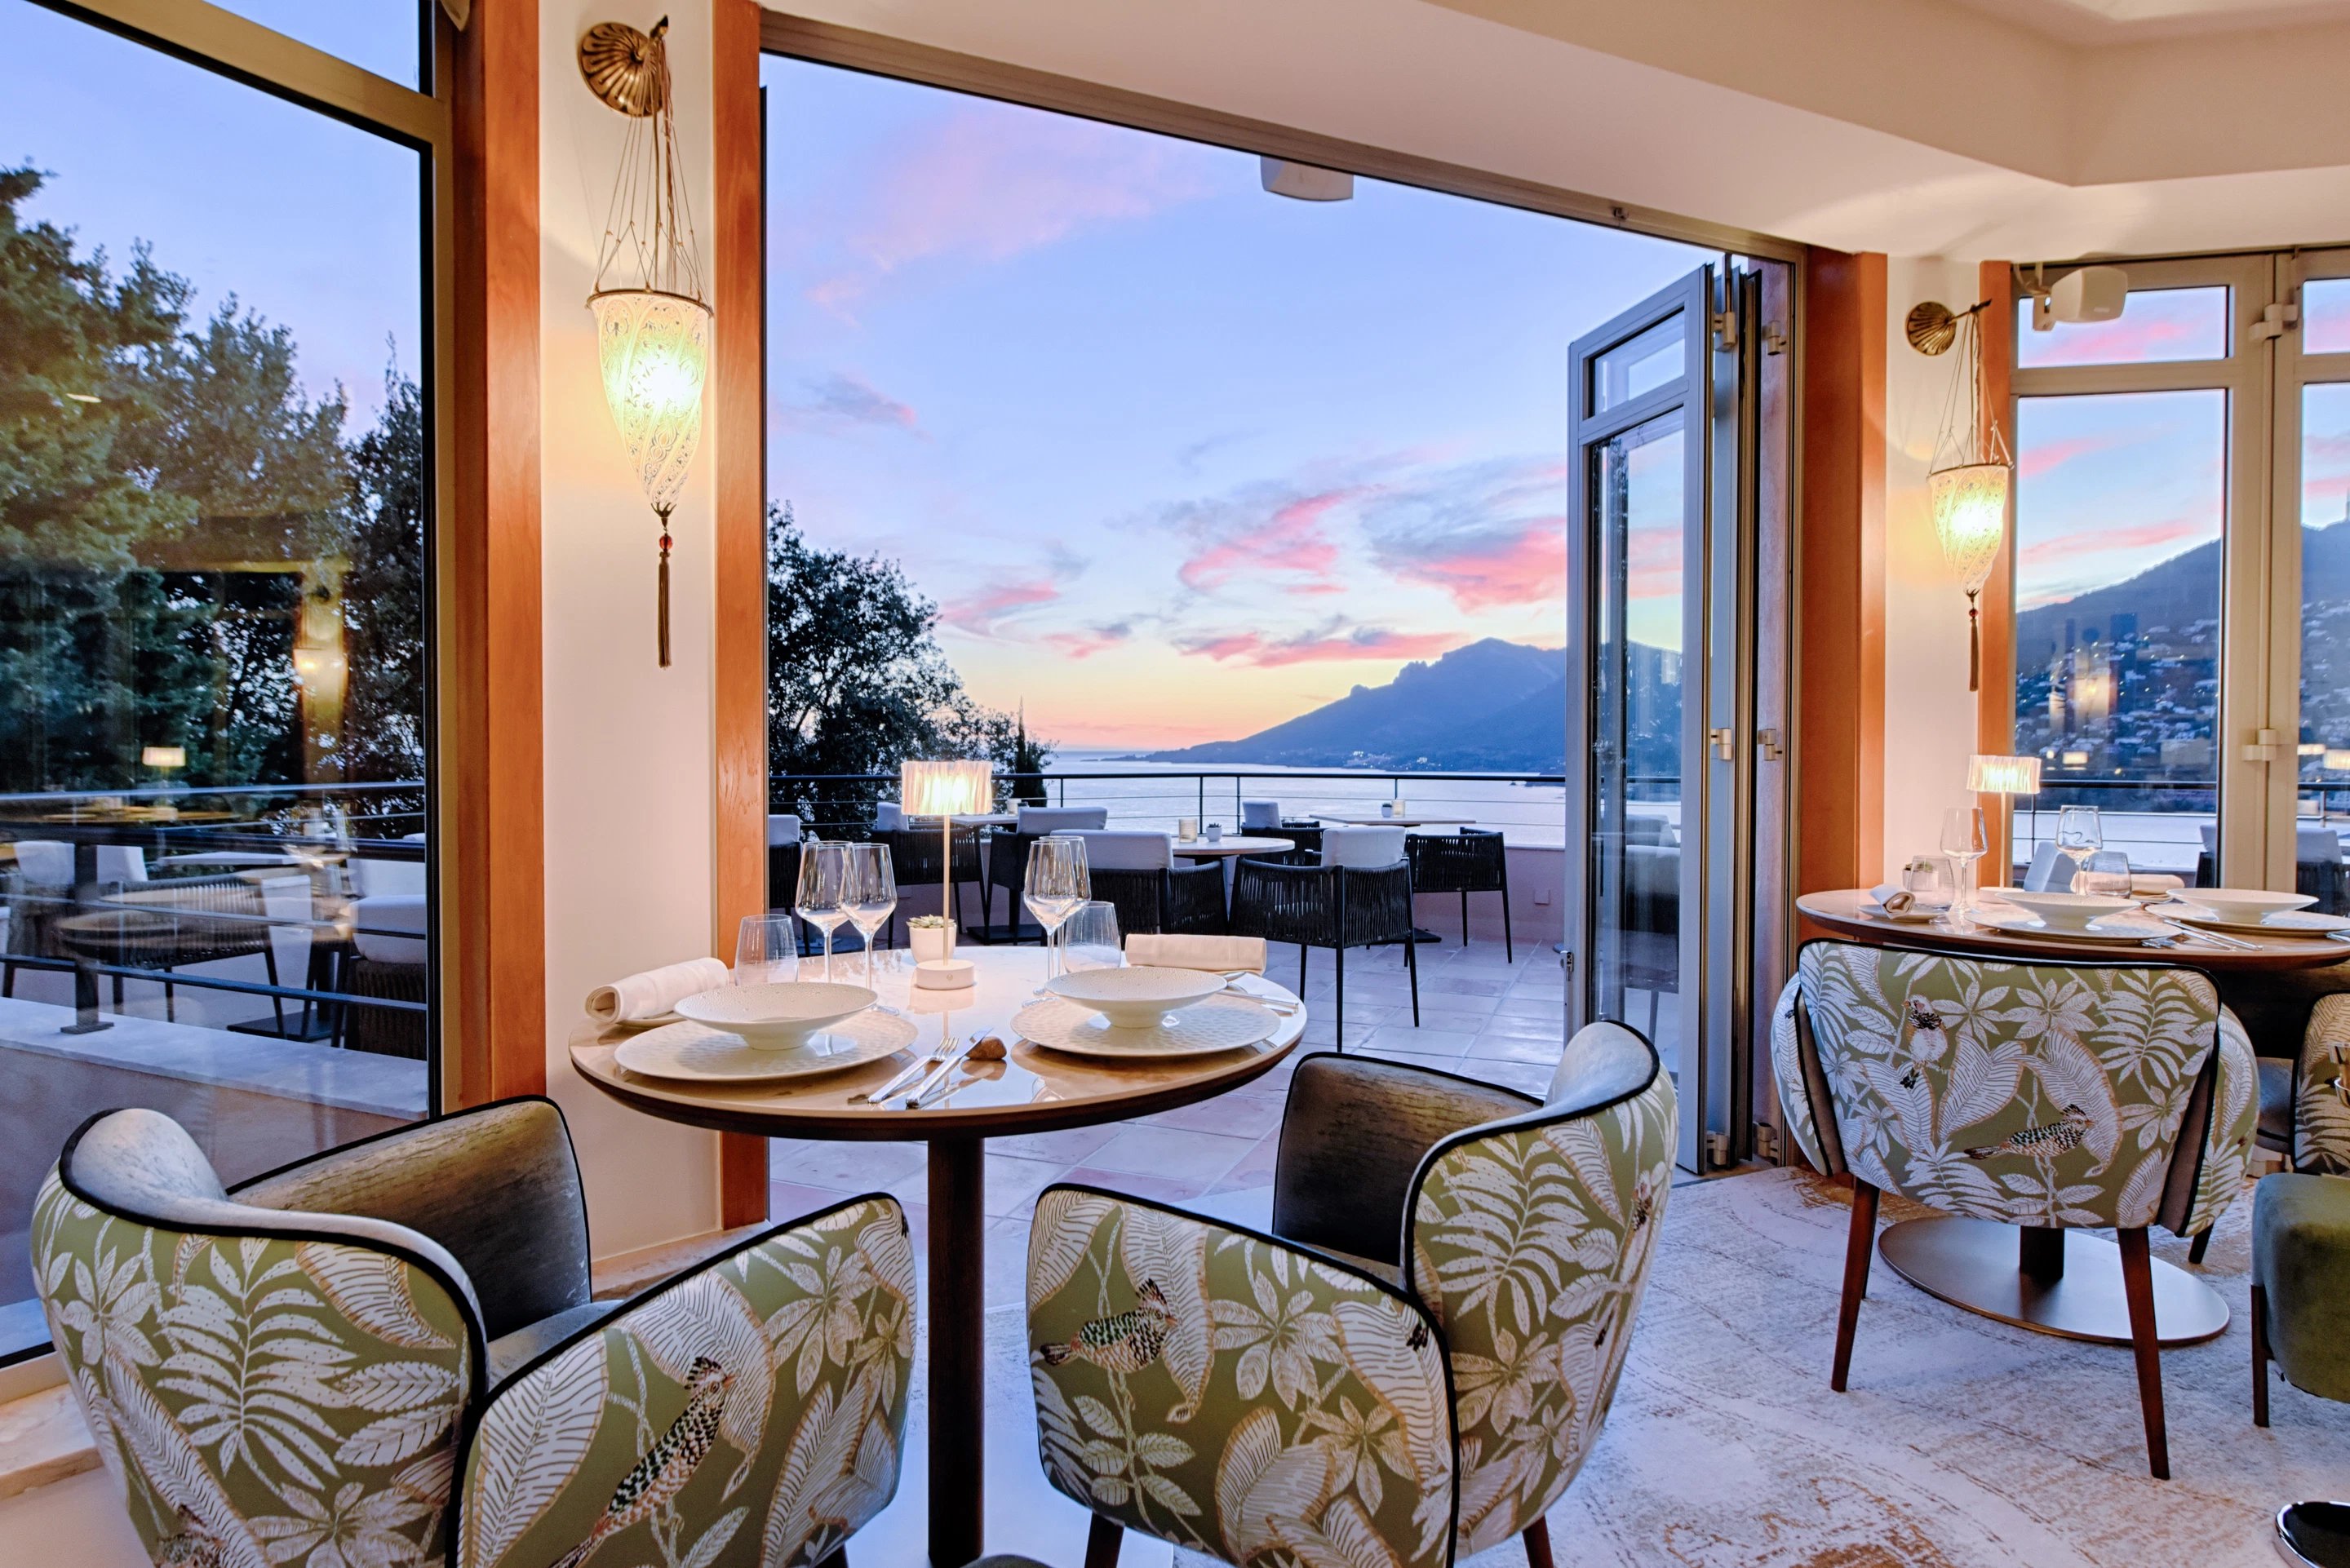 Tiara Yaktsa | Romantic stay on the French Riviera